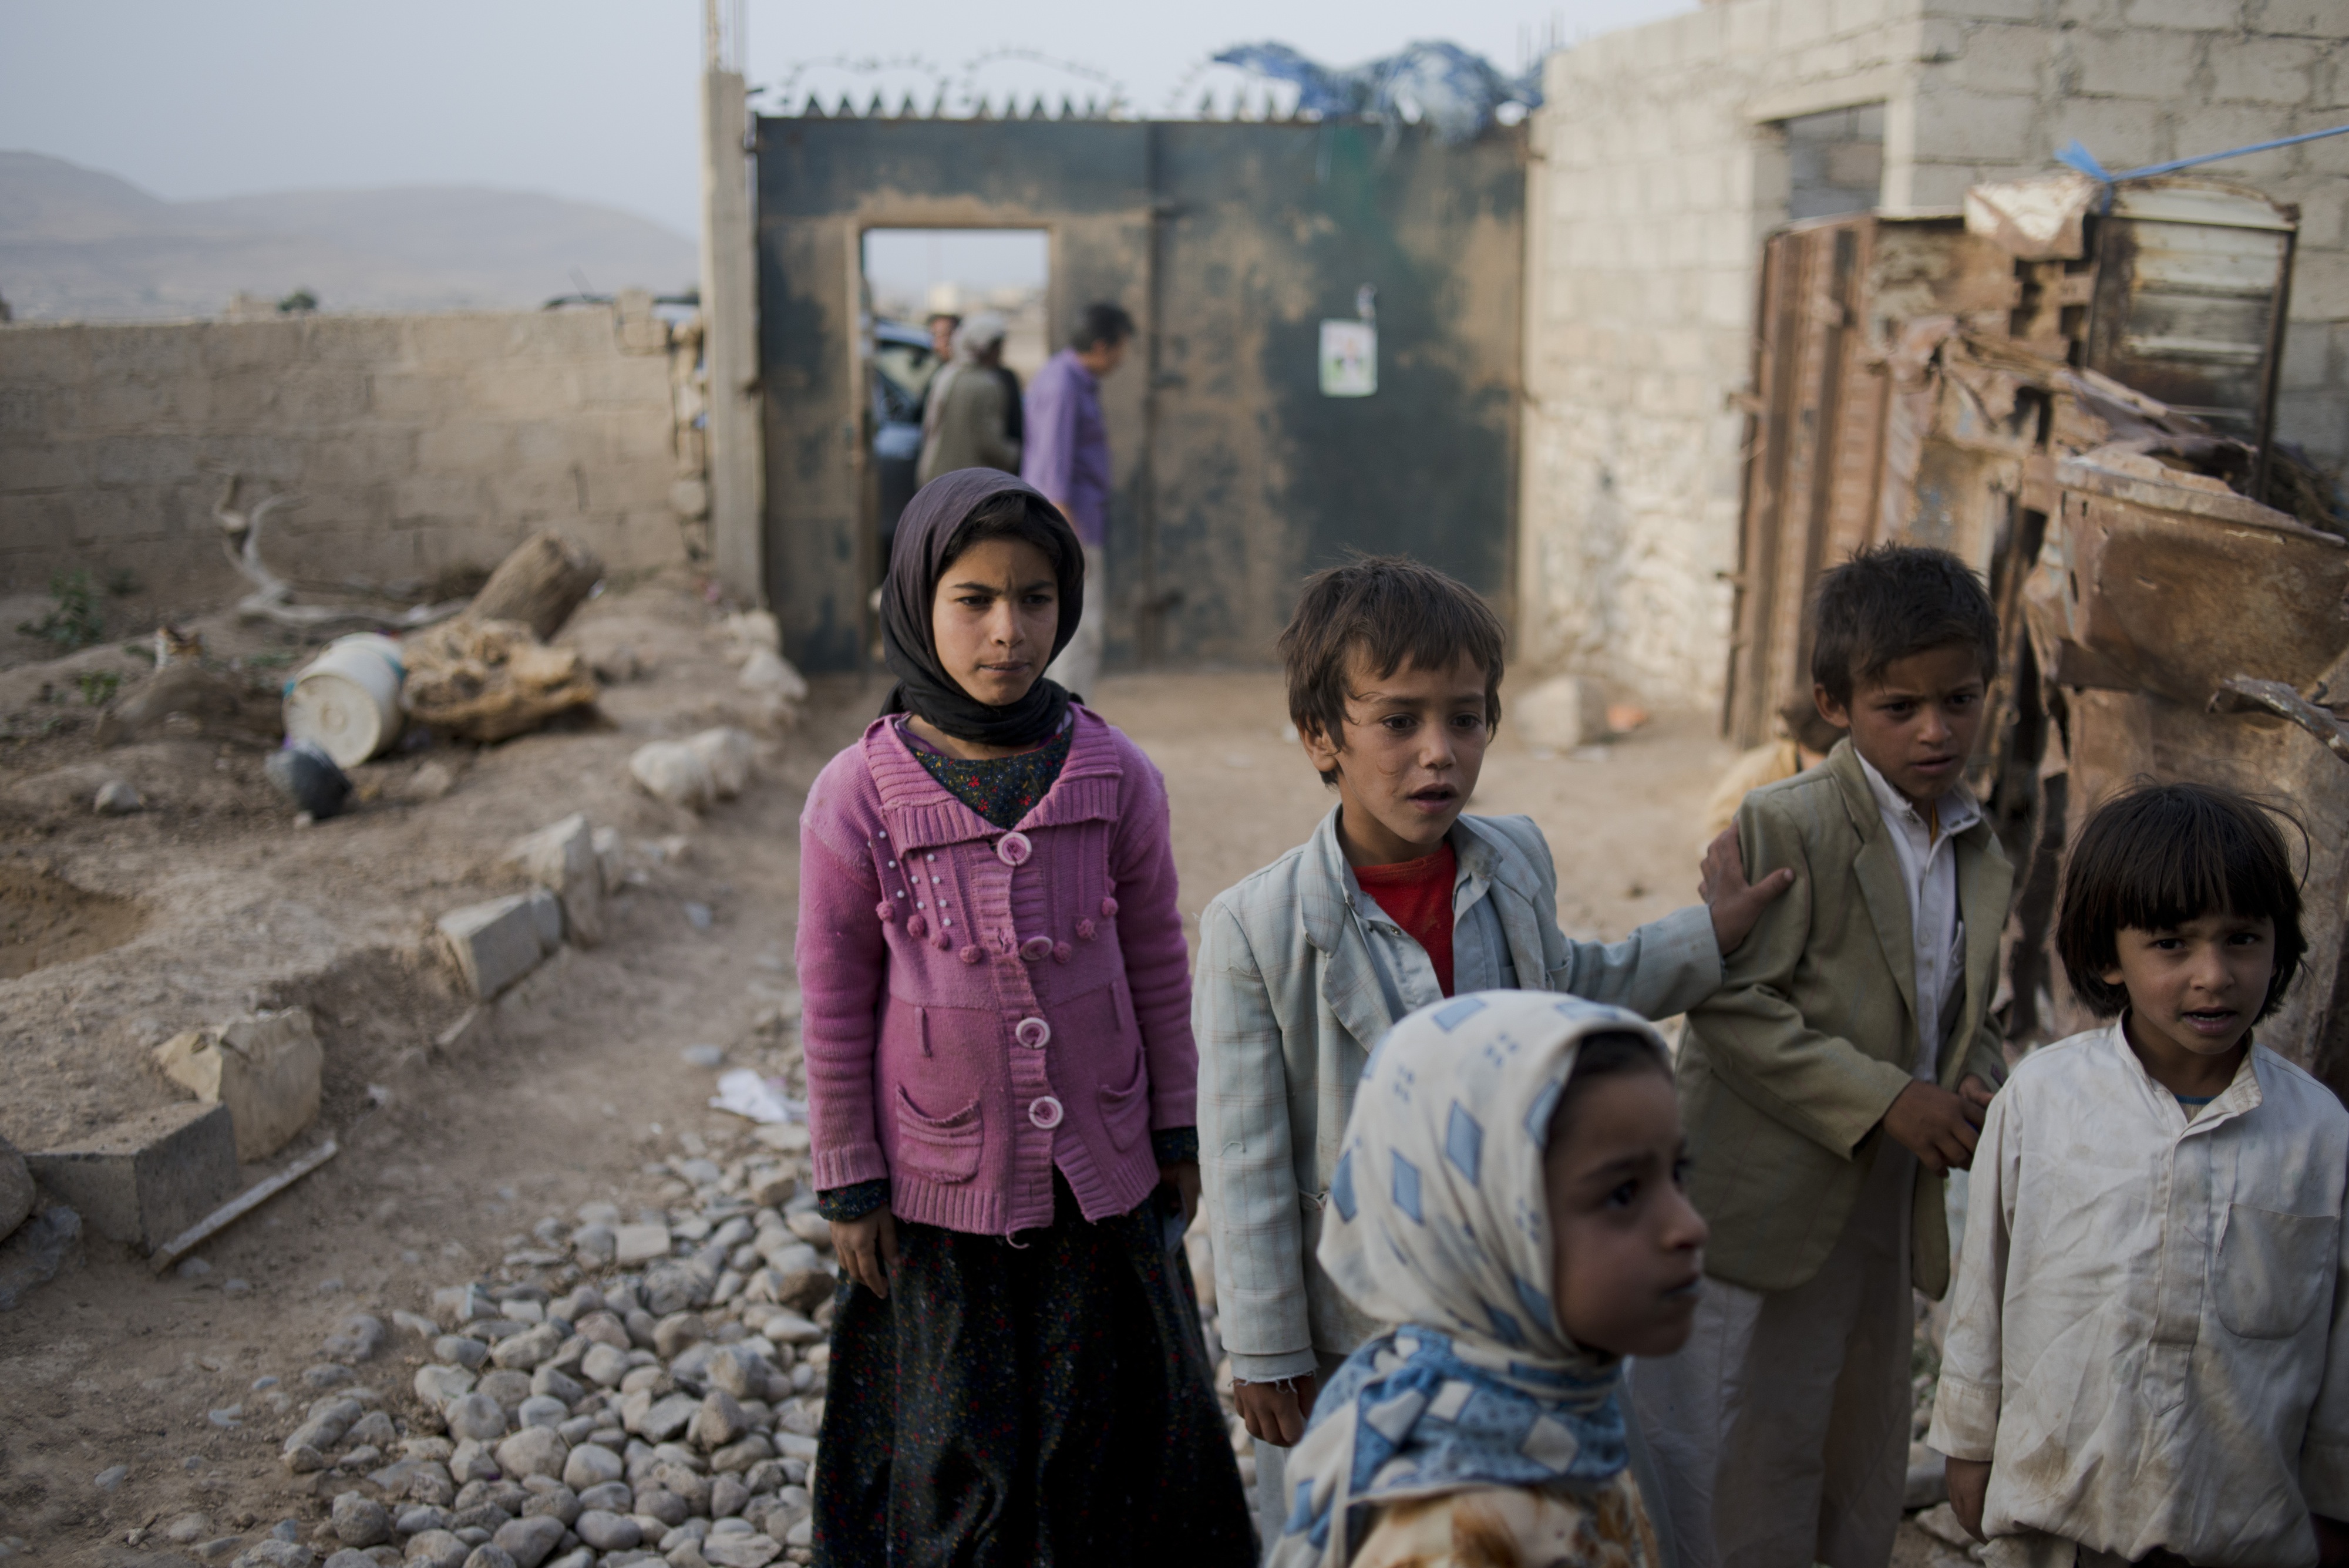  Cerca de mil 400 niños han muerto en Yemen desde 2015: UNICEF